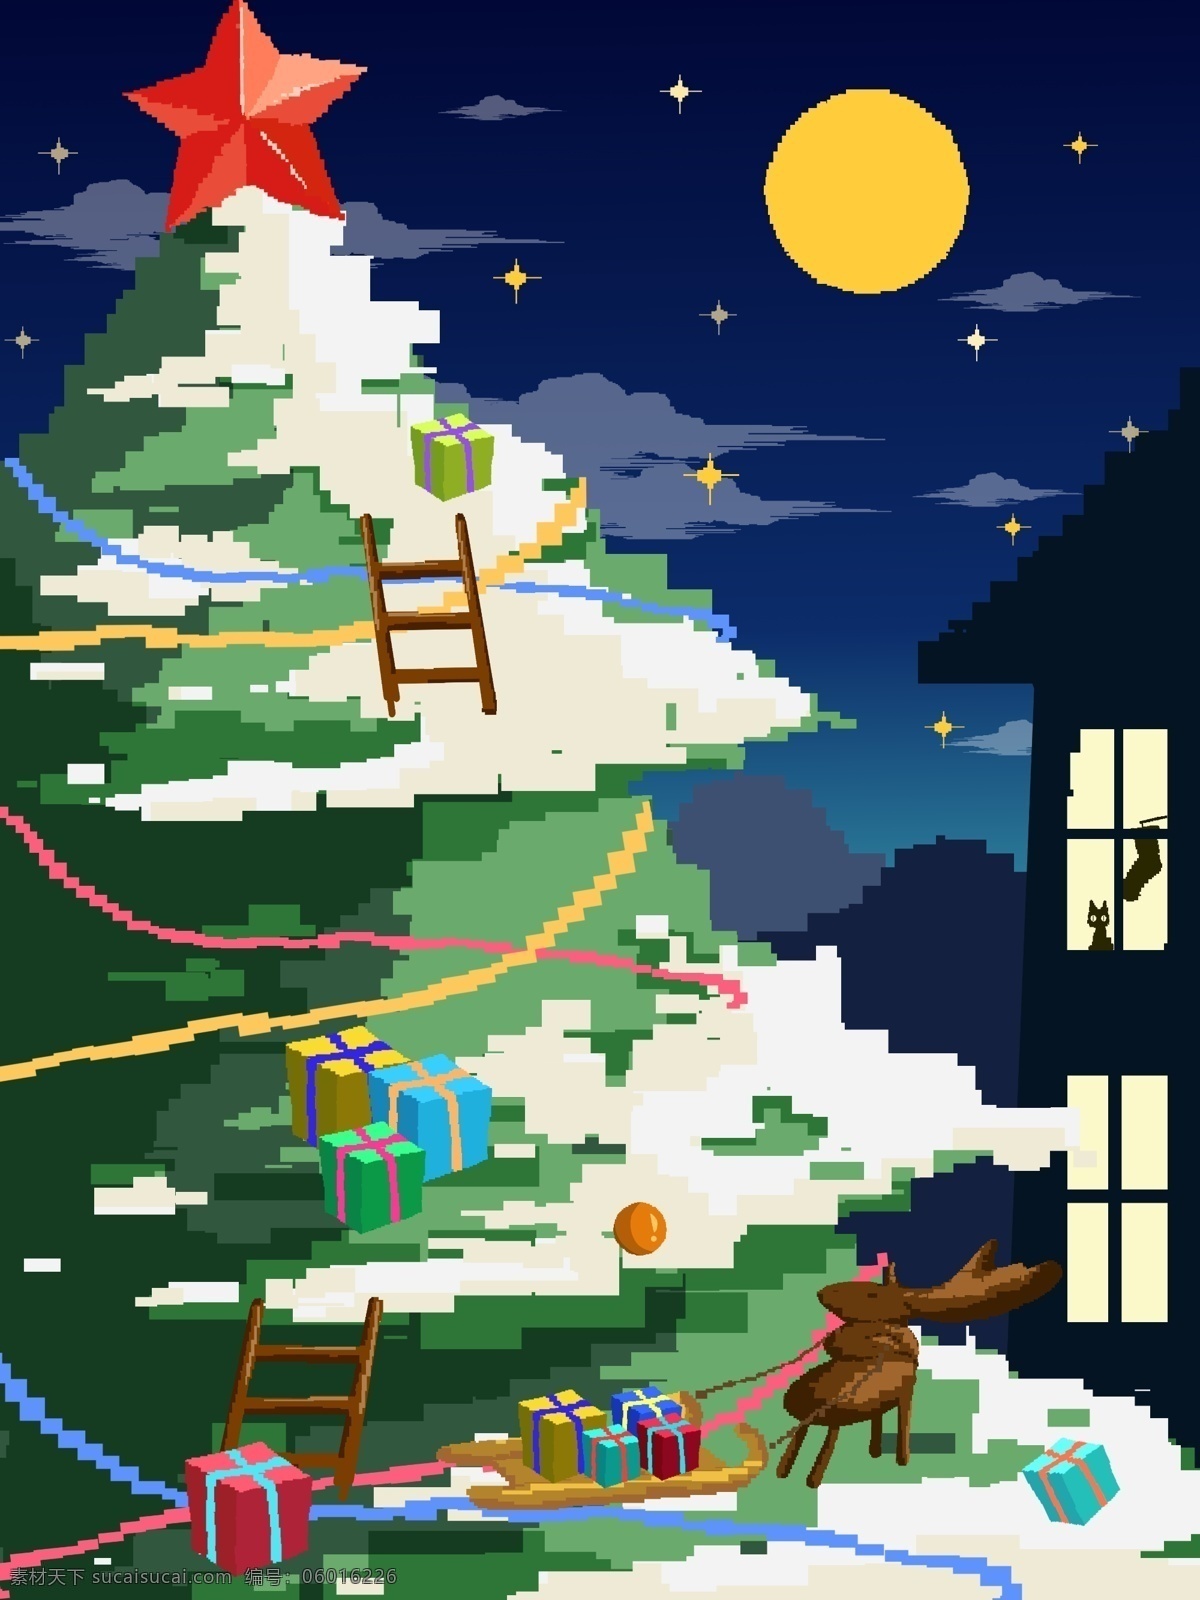 夜晚 夜景 圣诞快乐 背景 星空 唯美 梦幻 圣诞树 圣诞节 村庄 雪地 下雪 星空背景 广告背景